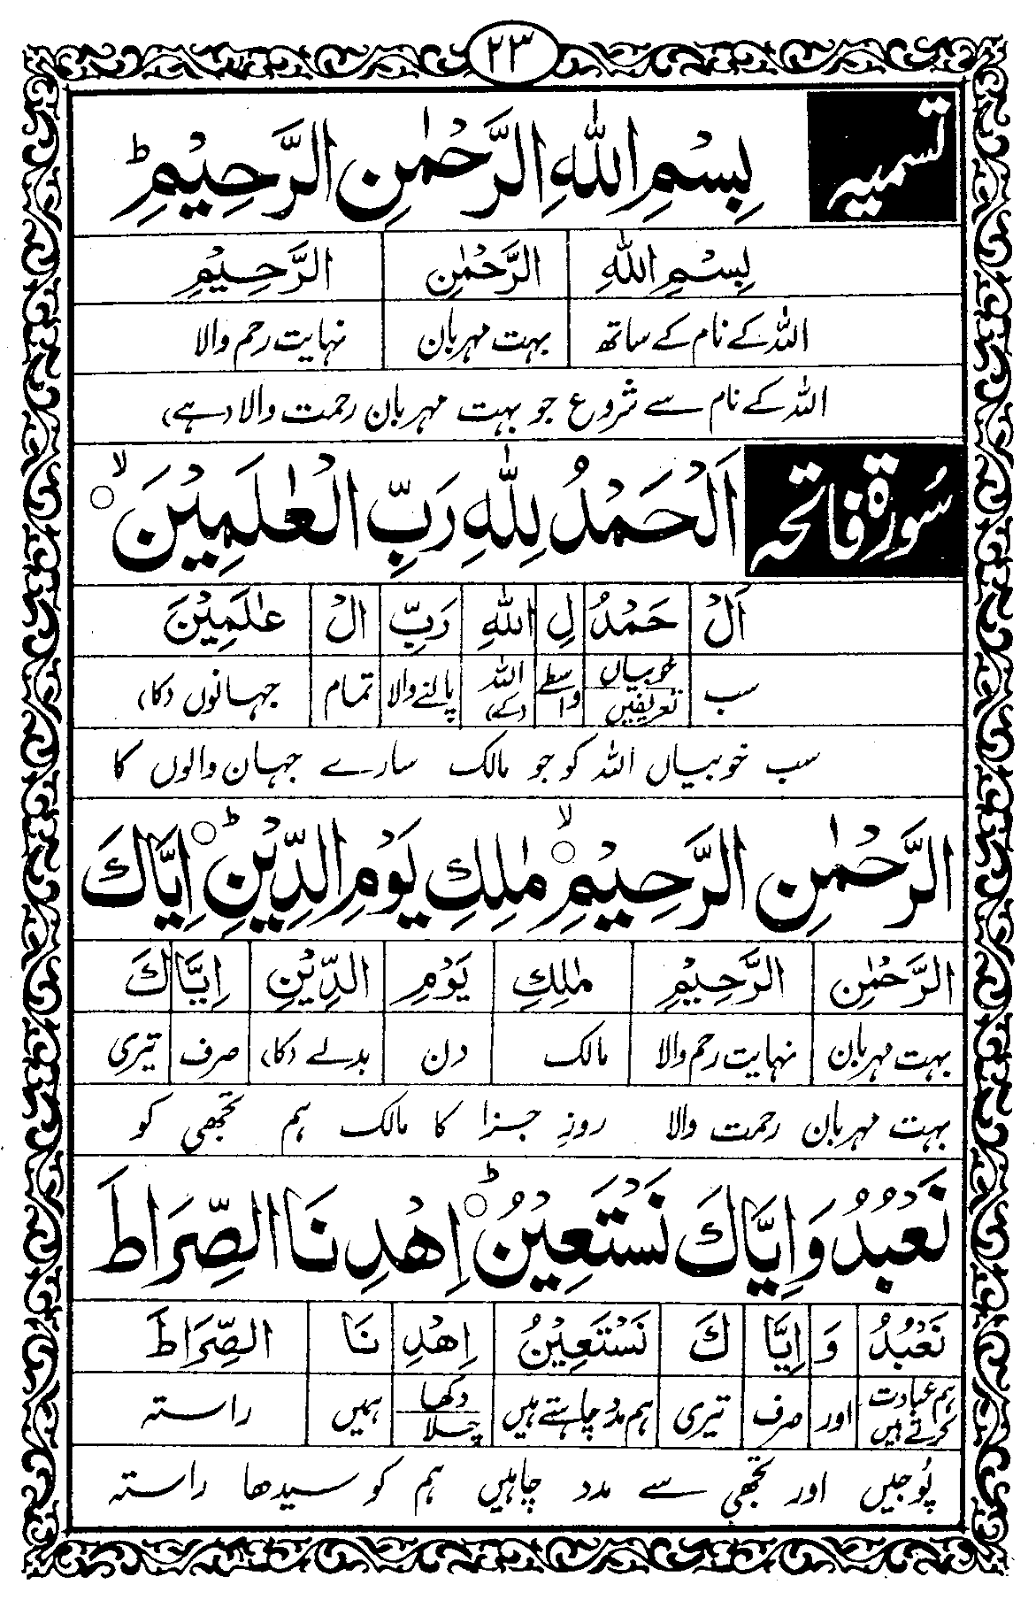 Namaz lafz ba lafz urdu tarjuma ( Namaz with urdu translation Word By Word )